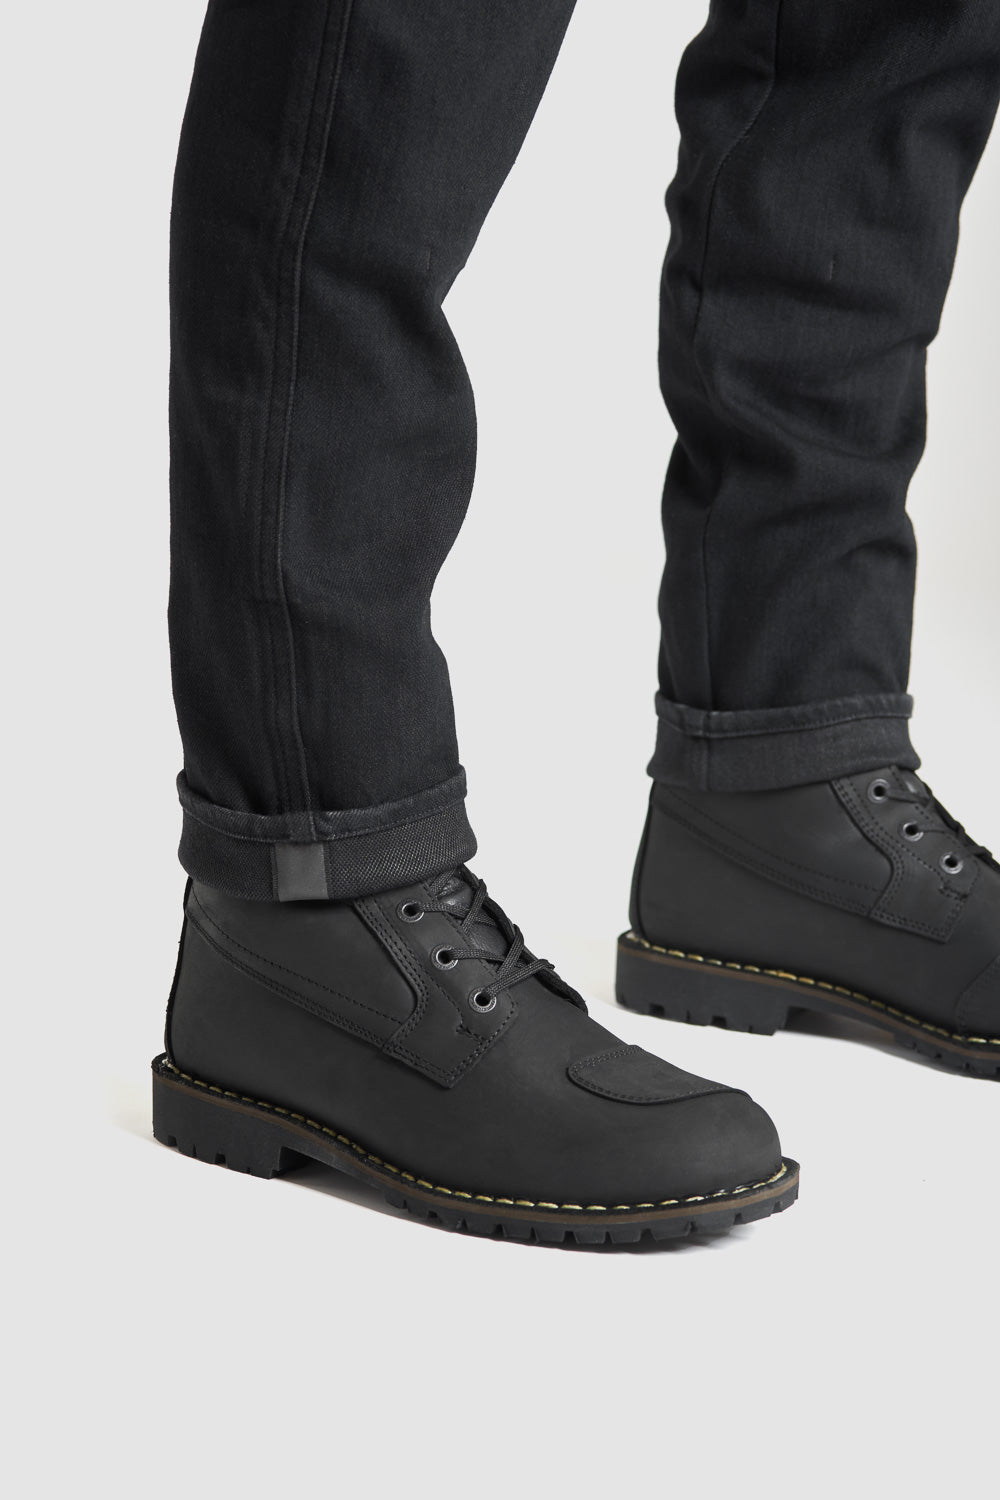 Steel Jeans AA - Single Layer Black